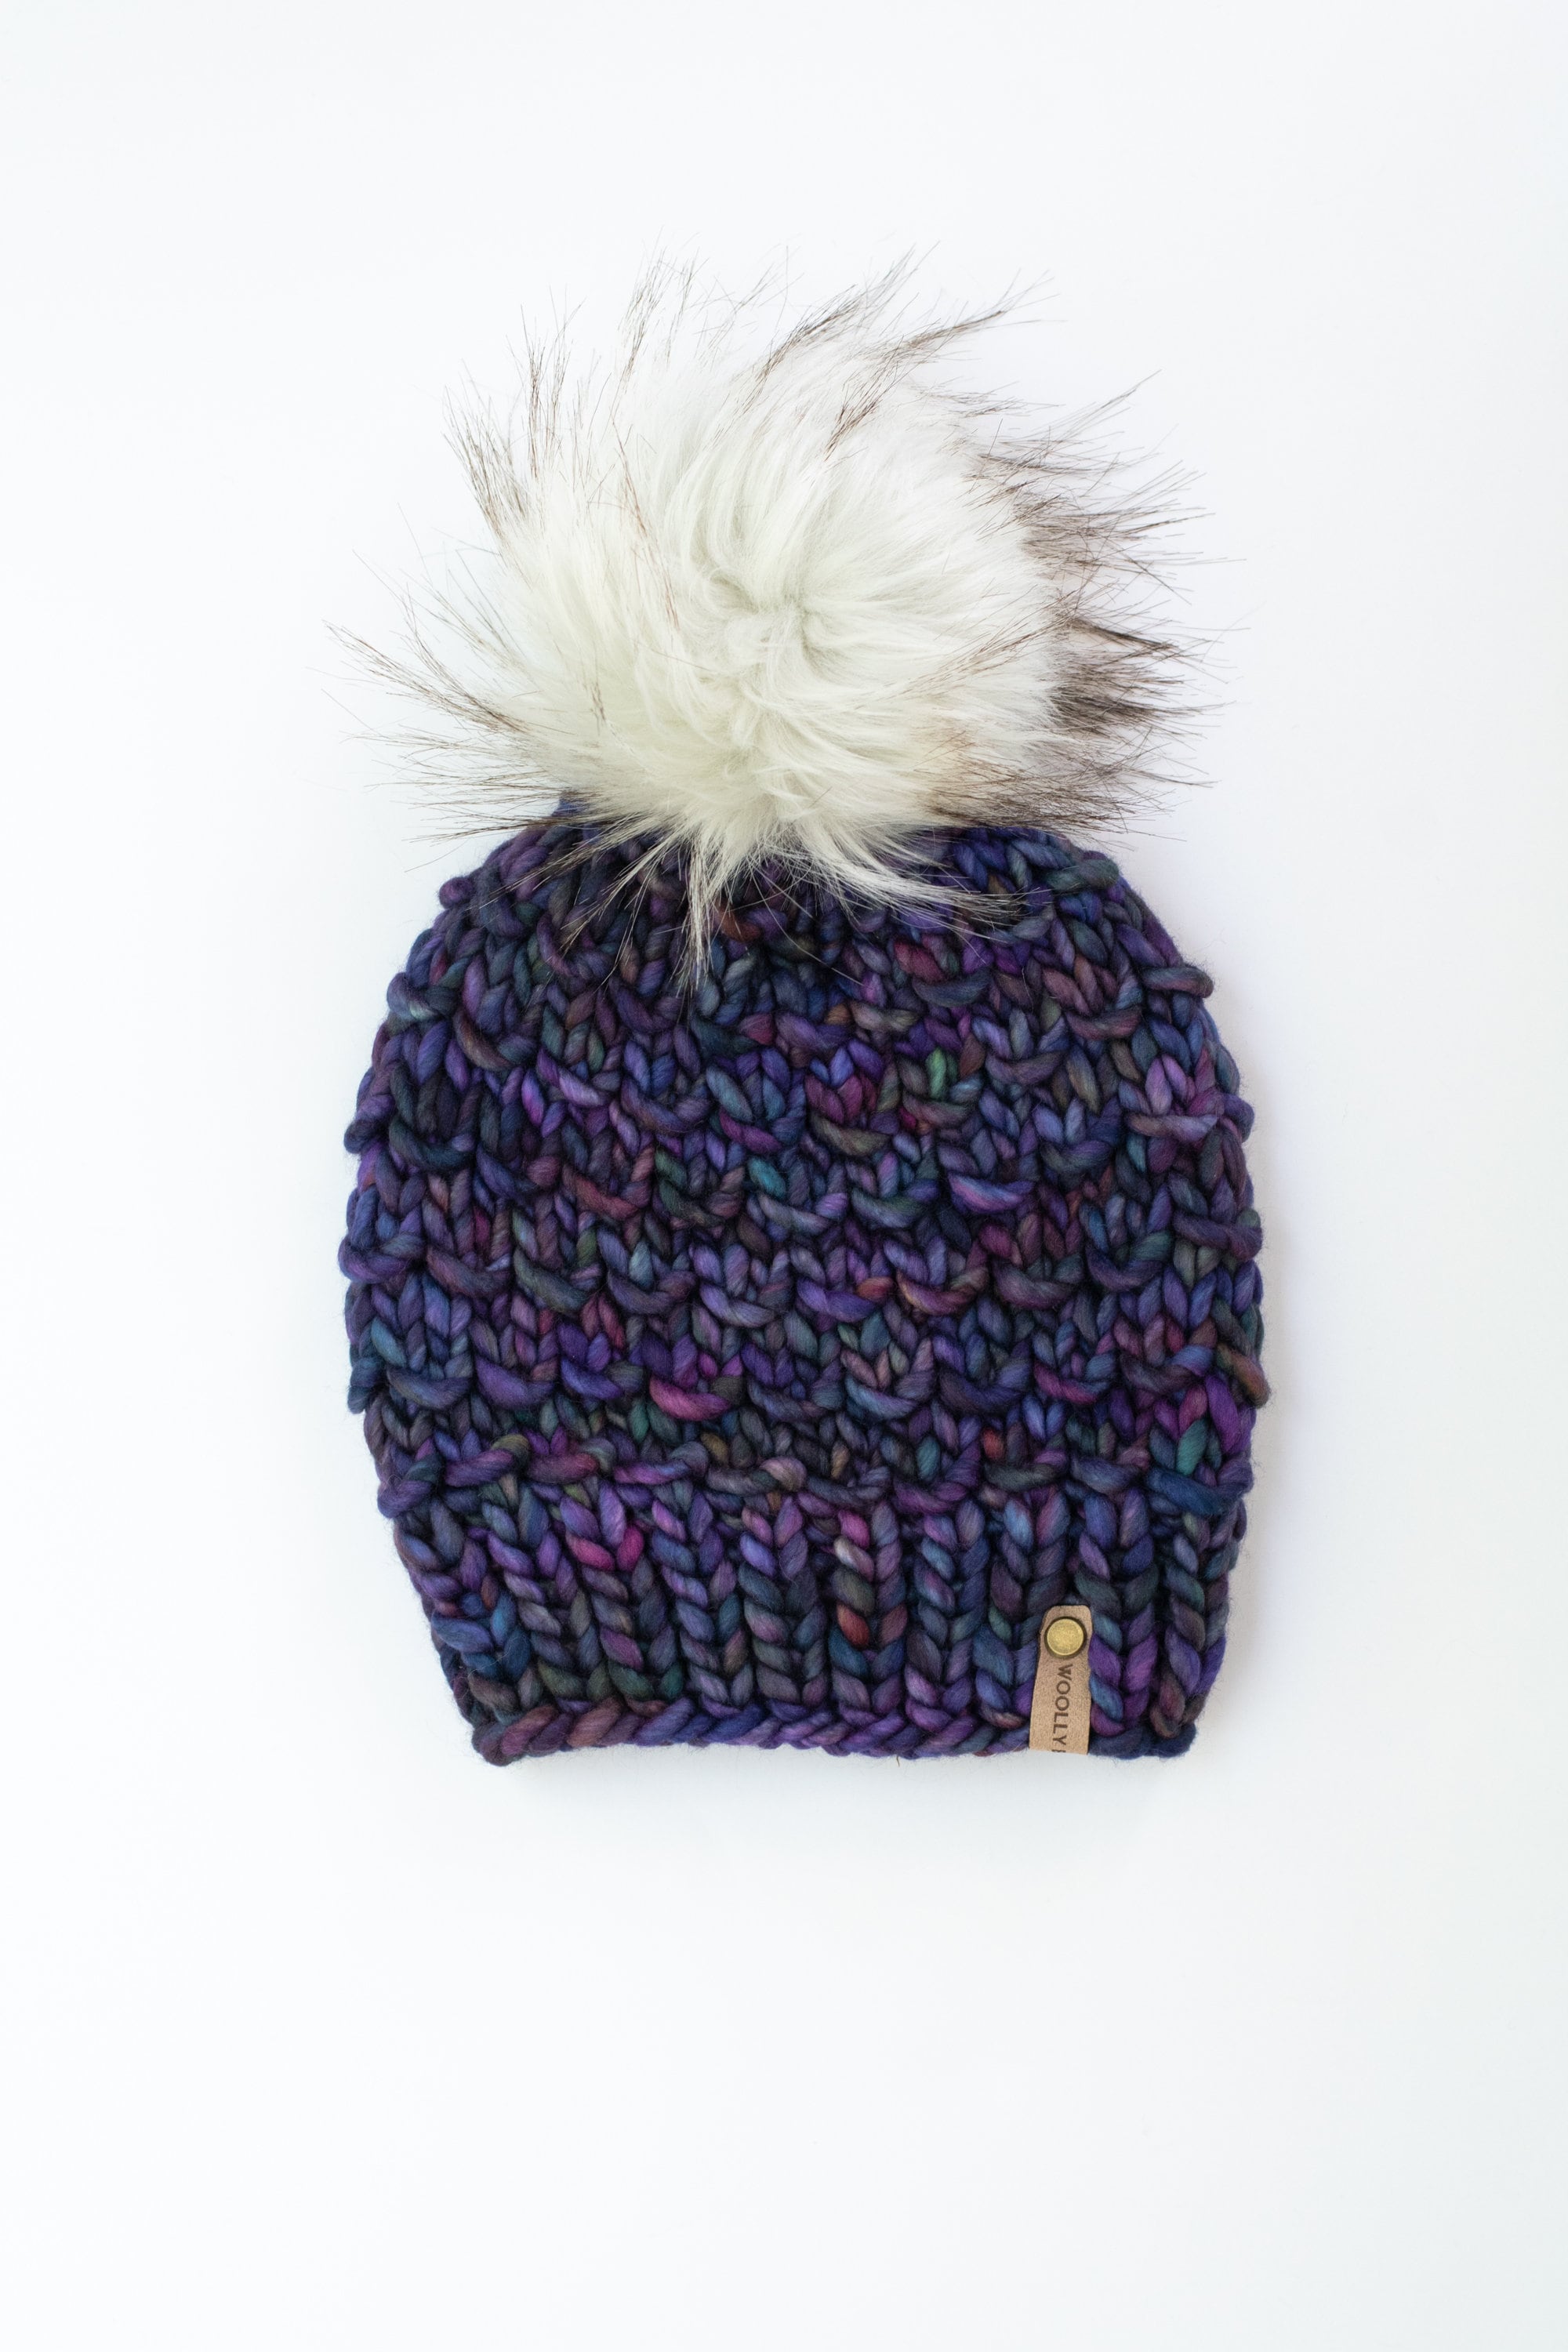 Hand Knit Hat With Faux Fur Pom Pom Alpaca Wool Hat Chunky 